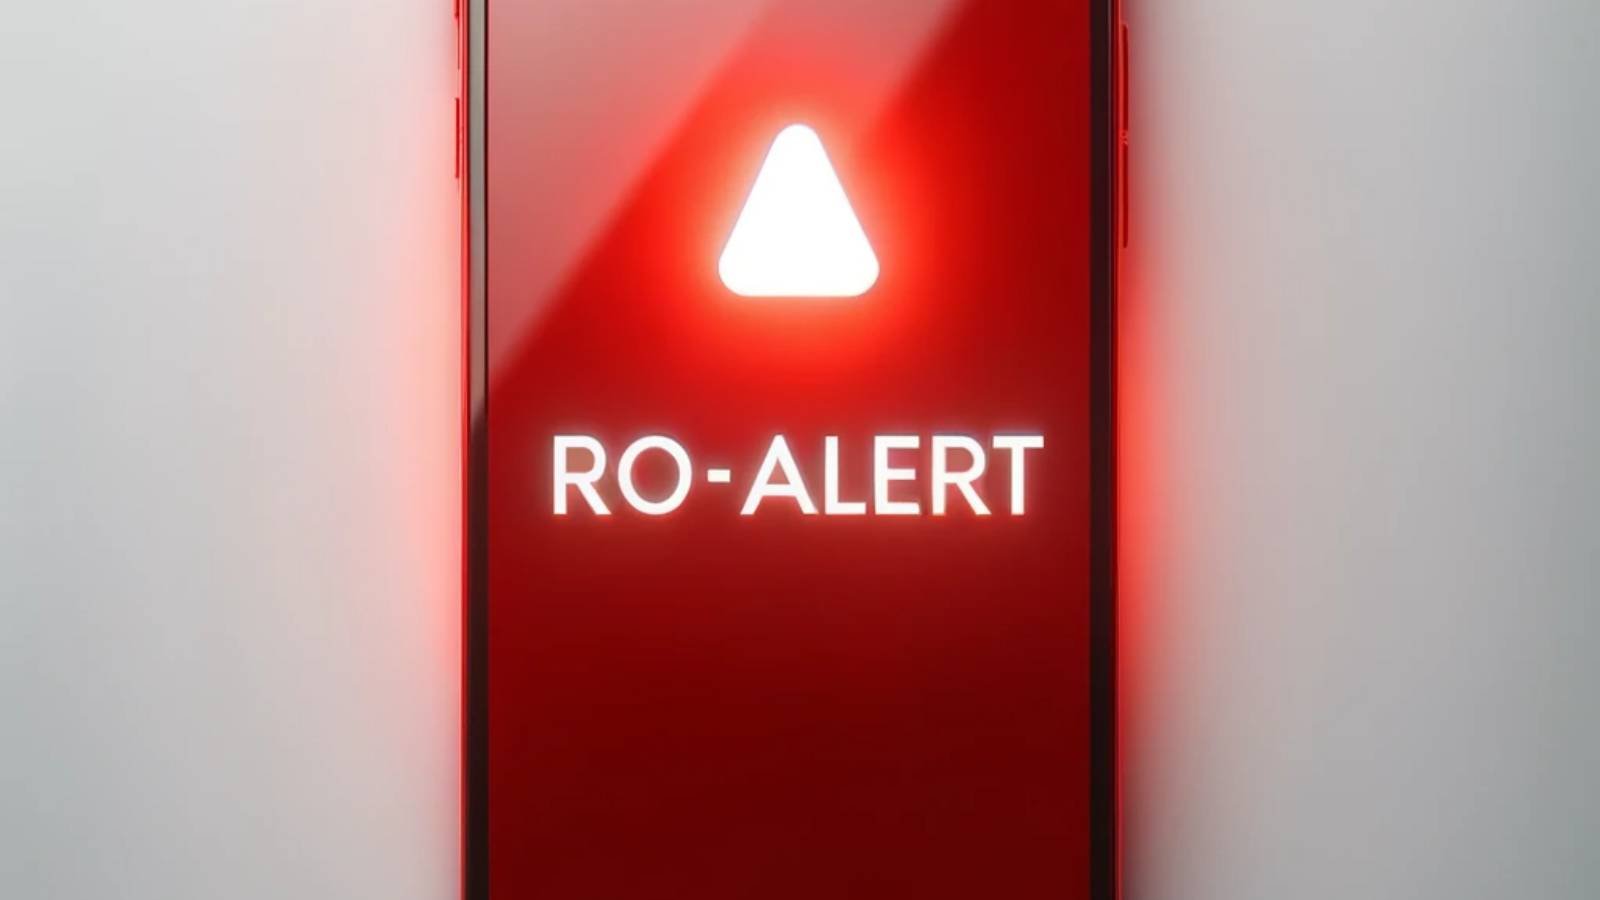 RO-ALERT El mensaje de alerta que alertó a los rumanos de Ploiesti